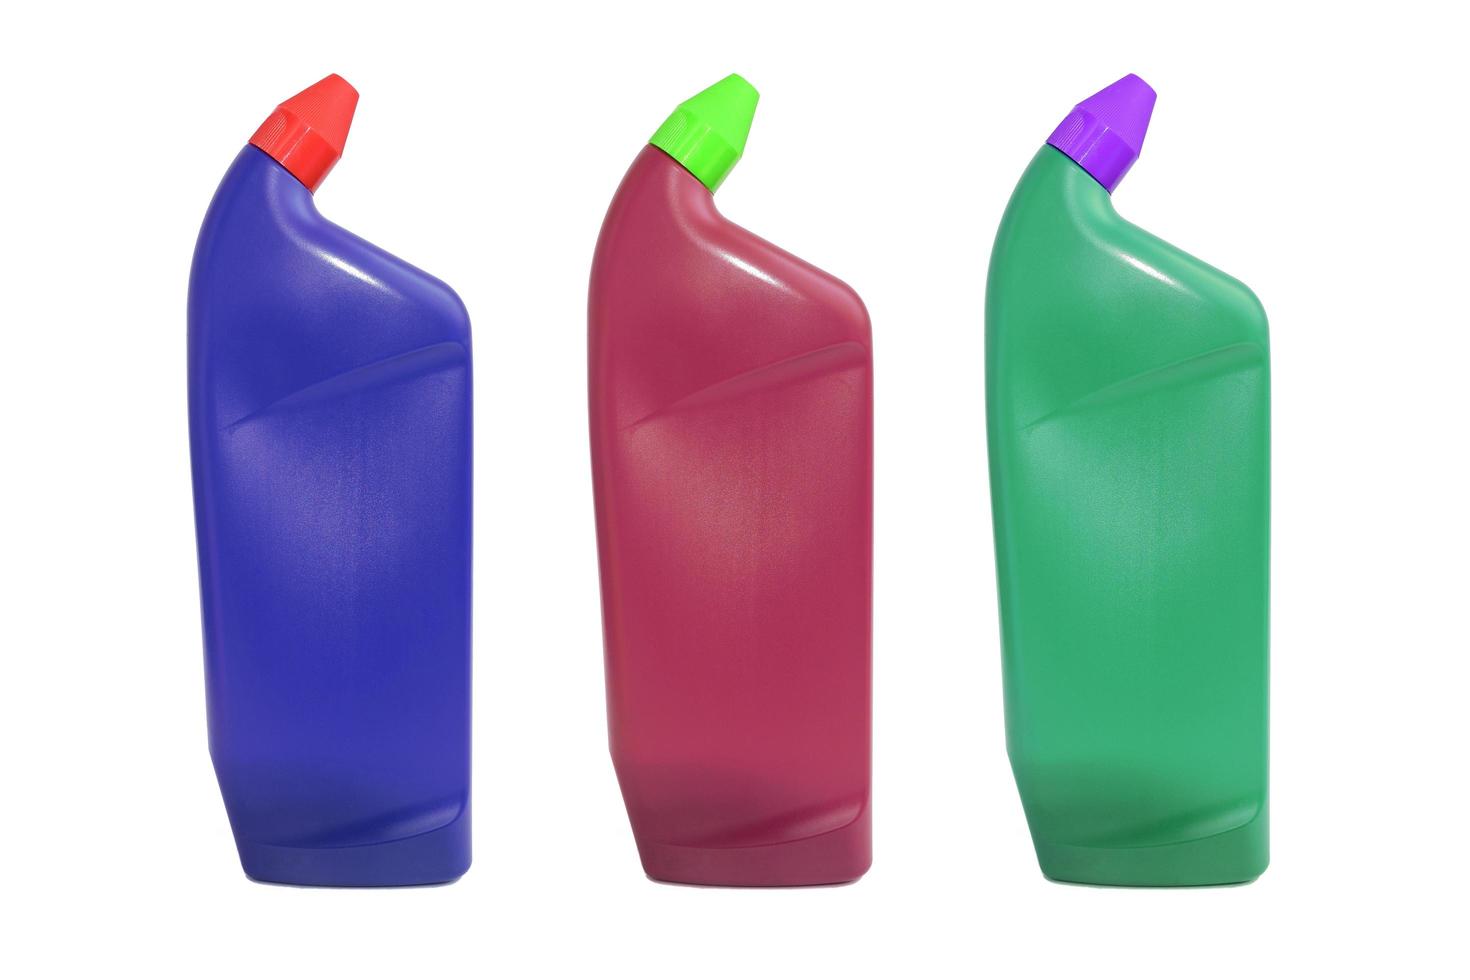 Plastikflasche für flüssige Produkte foto